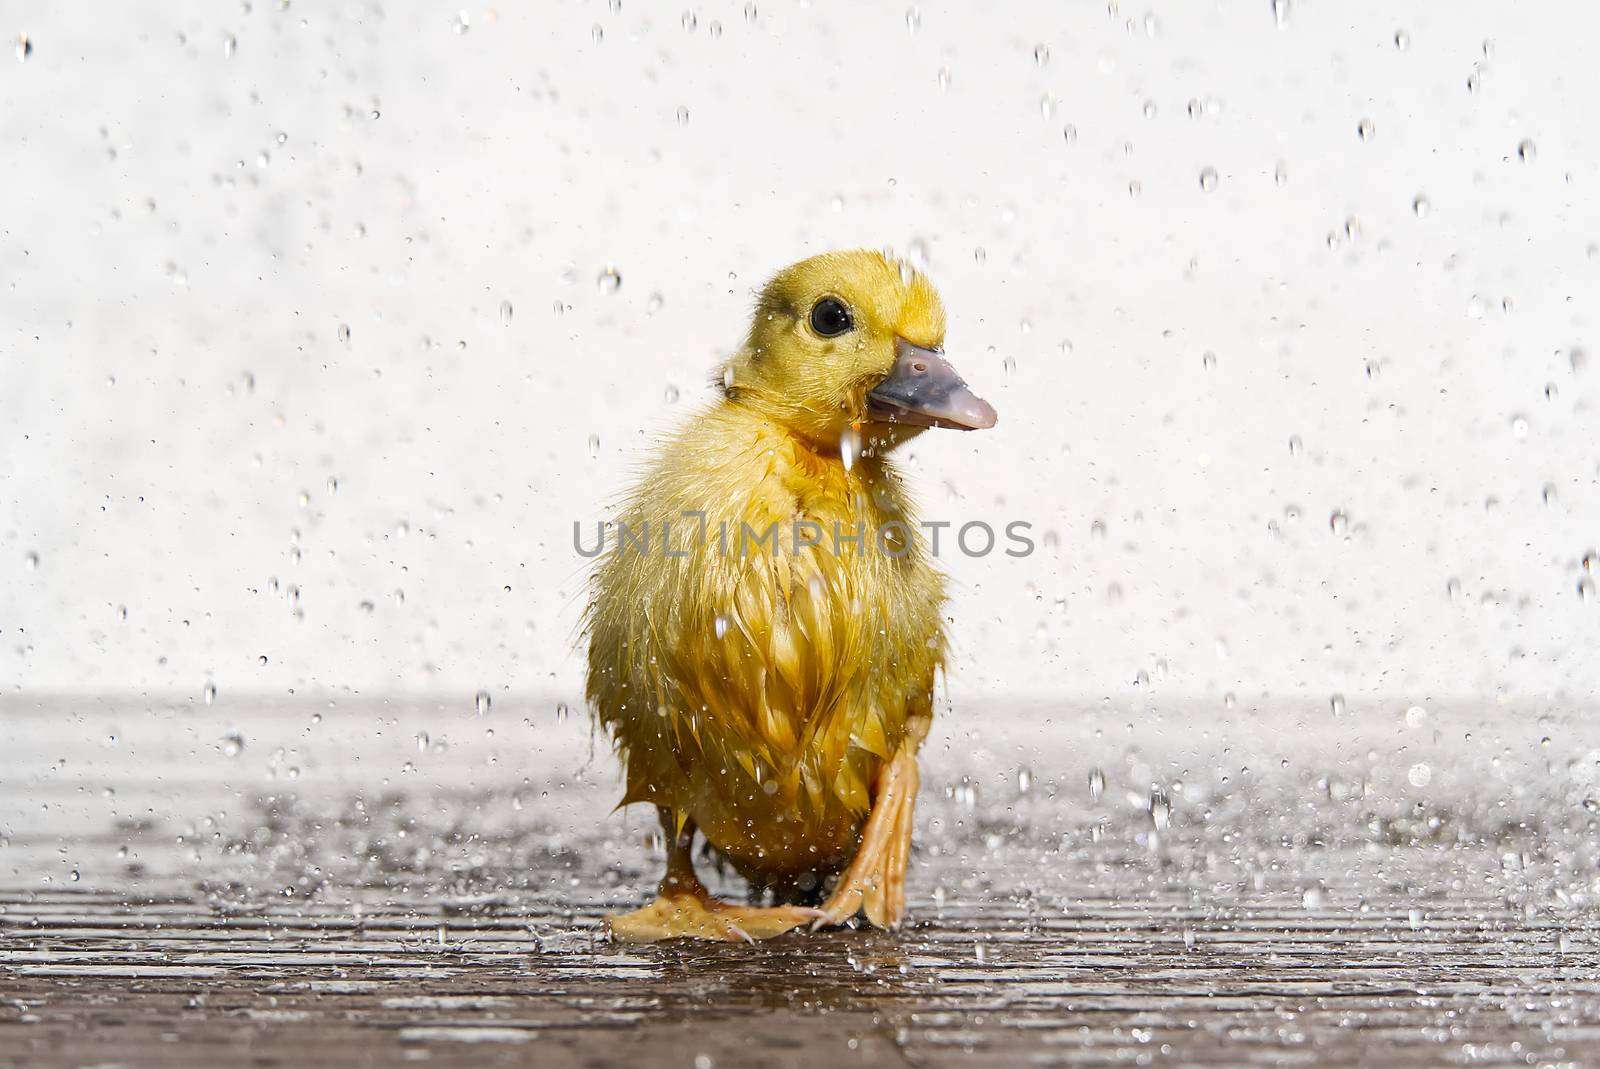 NewBorn little Cute wet duckling under rain drops. Raining wather concept